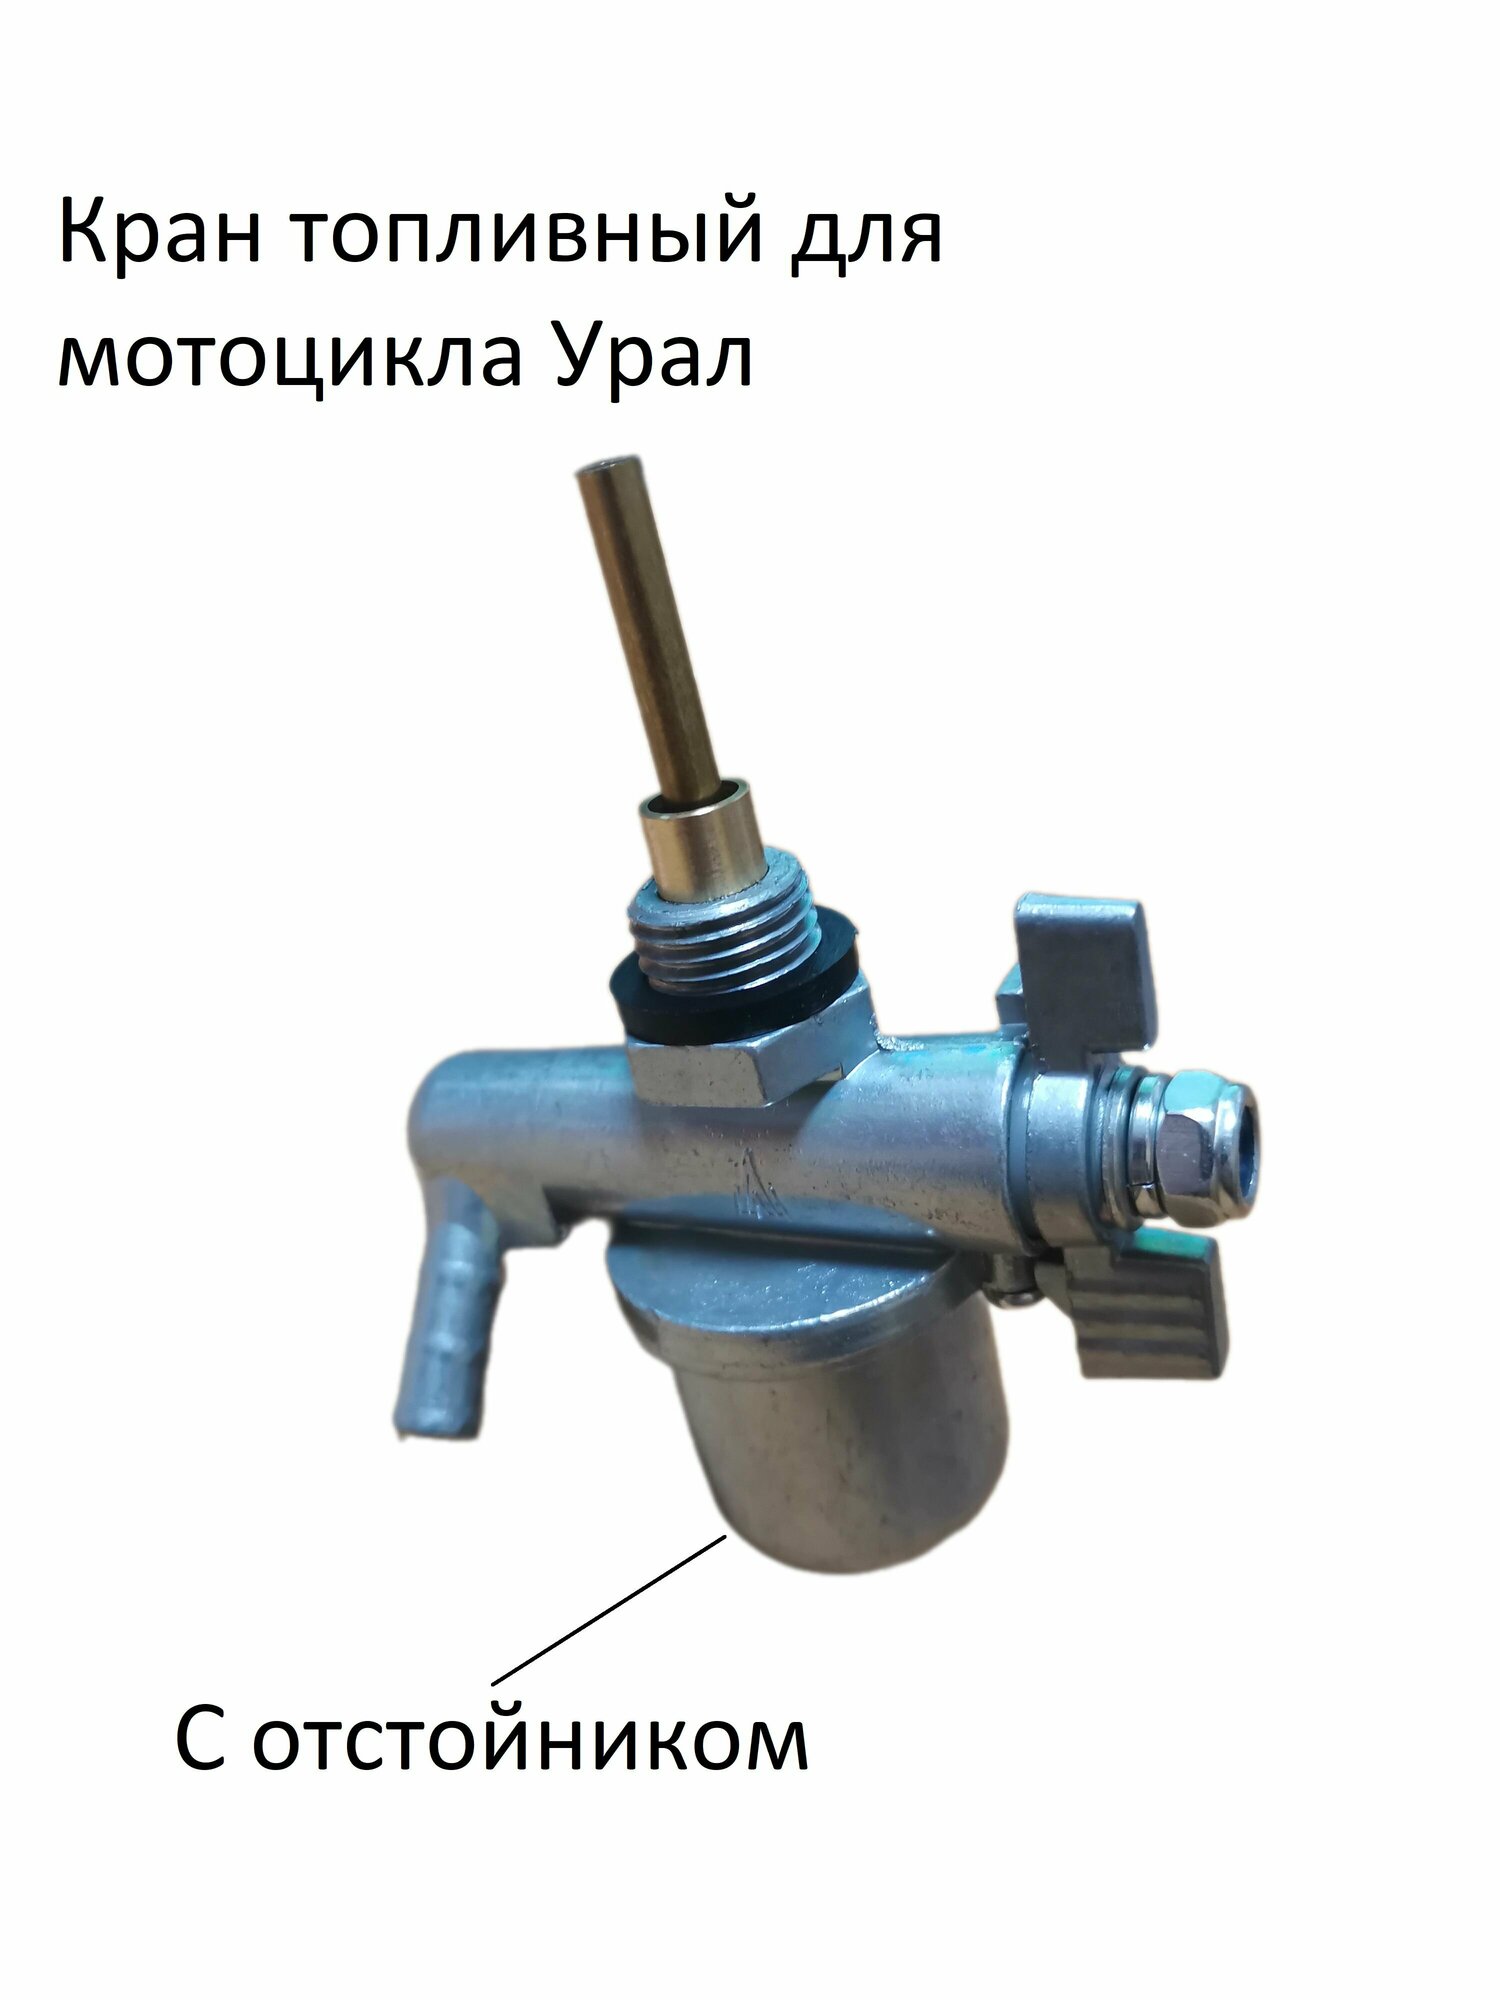 Кран топливный (бензокран) механический на мотоцикл Урал